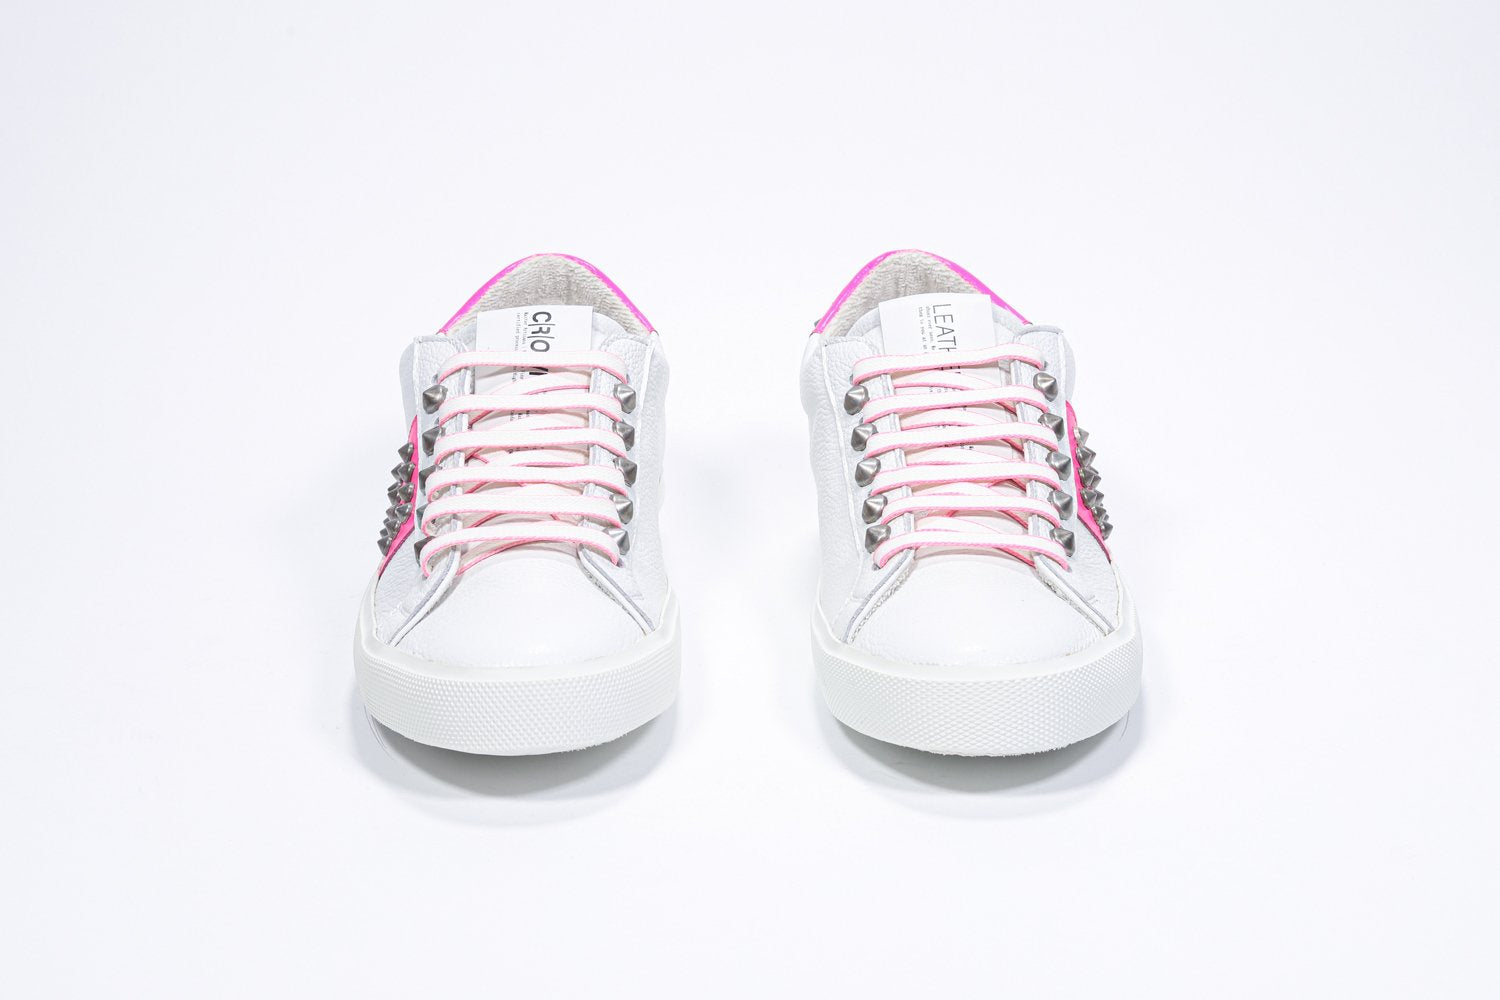 Vue de face de la chaussure blanche et rose néon sneaker. Tige en cuir avec clous et semelle en caoutchouc blanc.